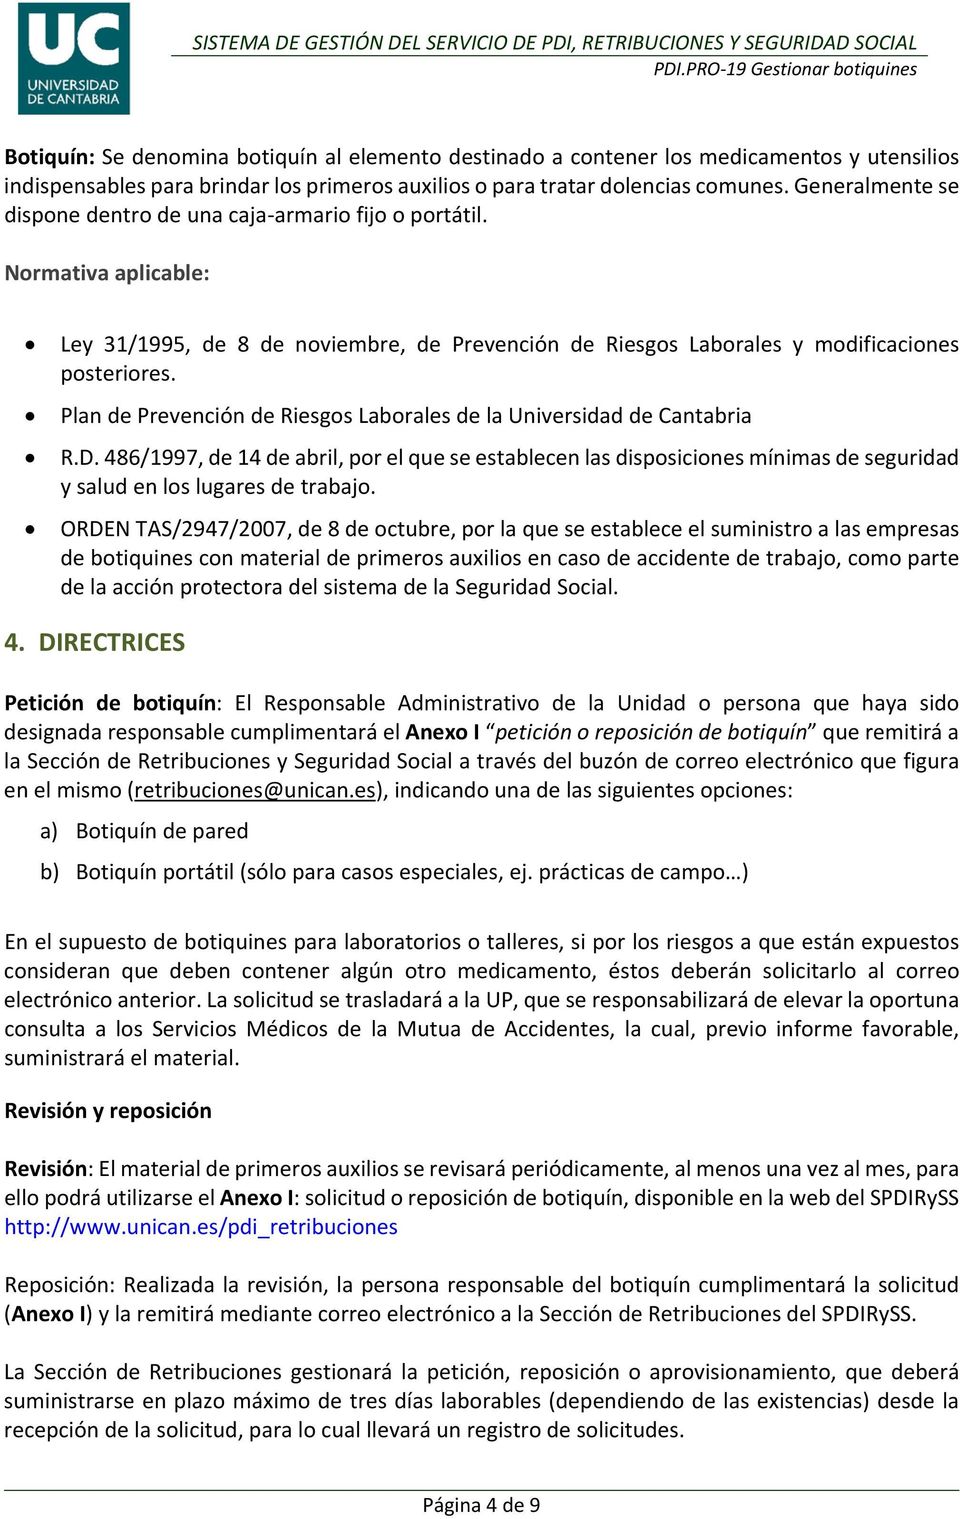 Plan de Prevención de Riesgos Laborales de la Universidad de Cantabria R.D. 486/1997, de 14 de abril, por el que se establecen las disposiciones mínimas de seguridad y salud en los lugares de trabajo.